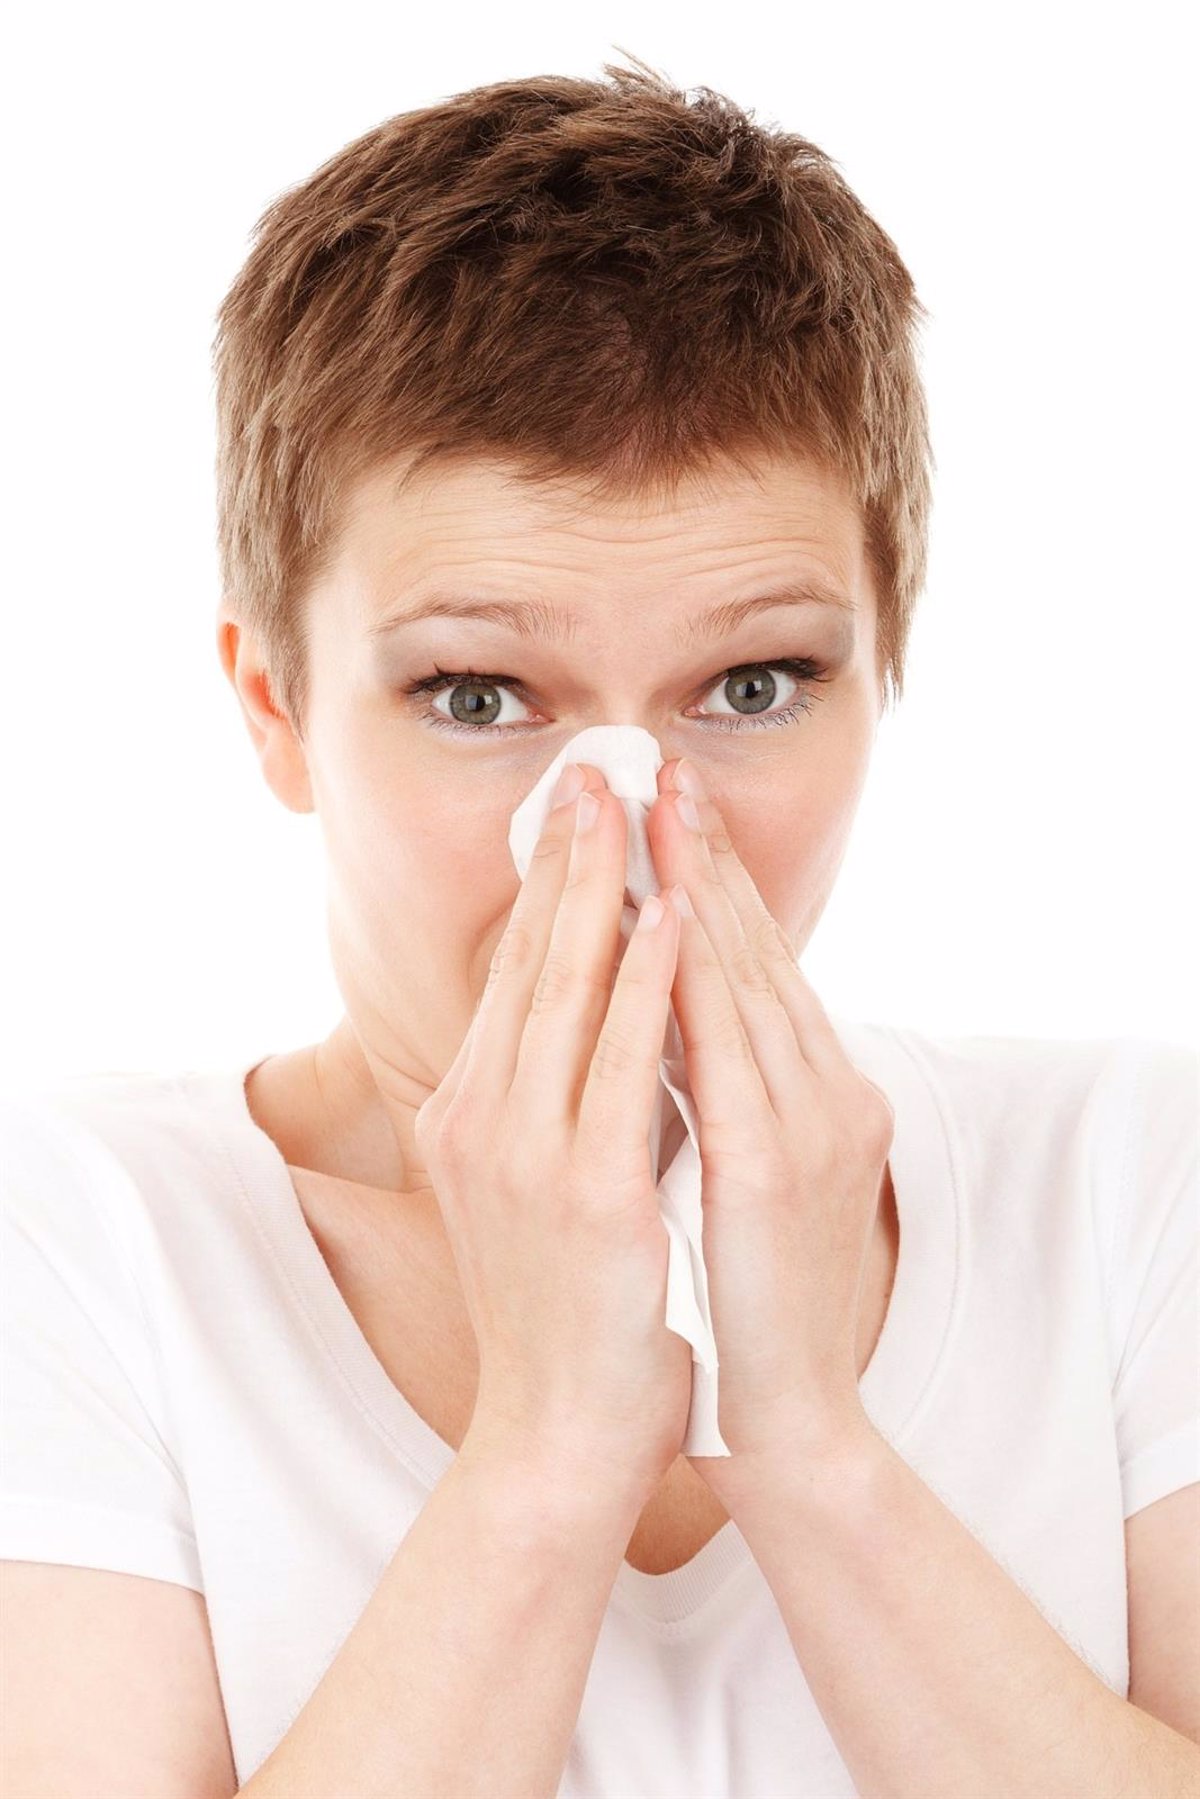 Lavados nasales: la importancia de una buena técnica